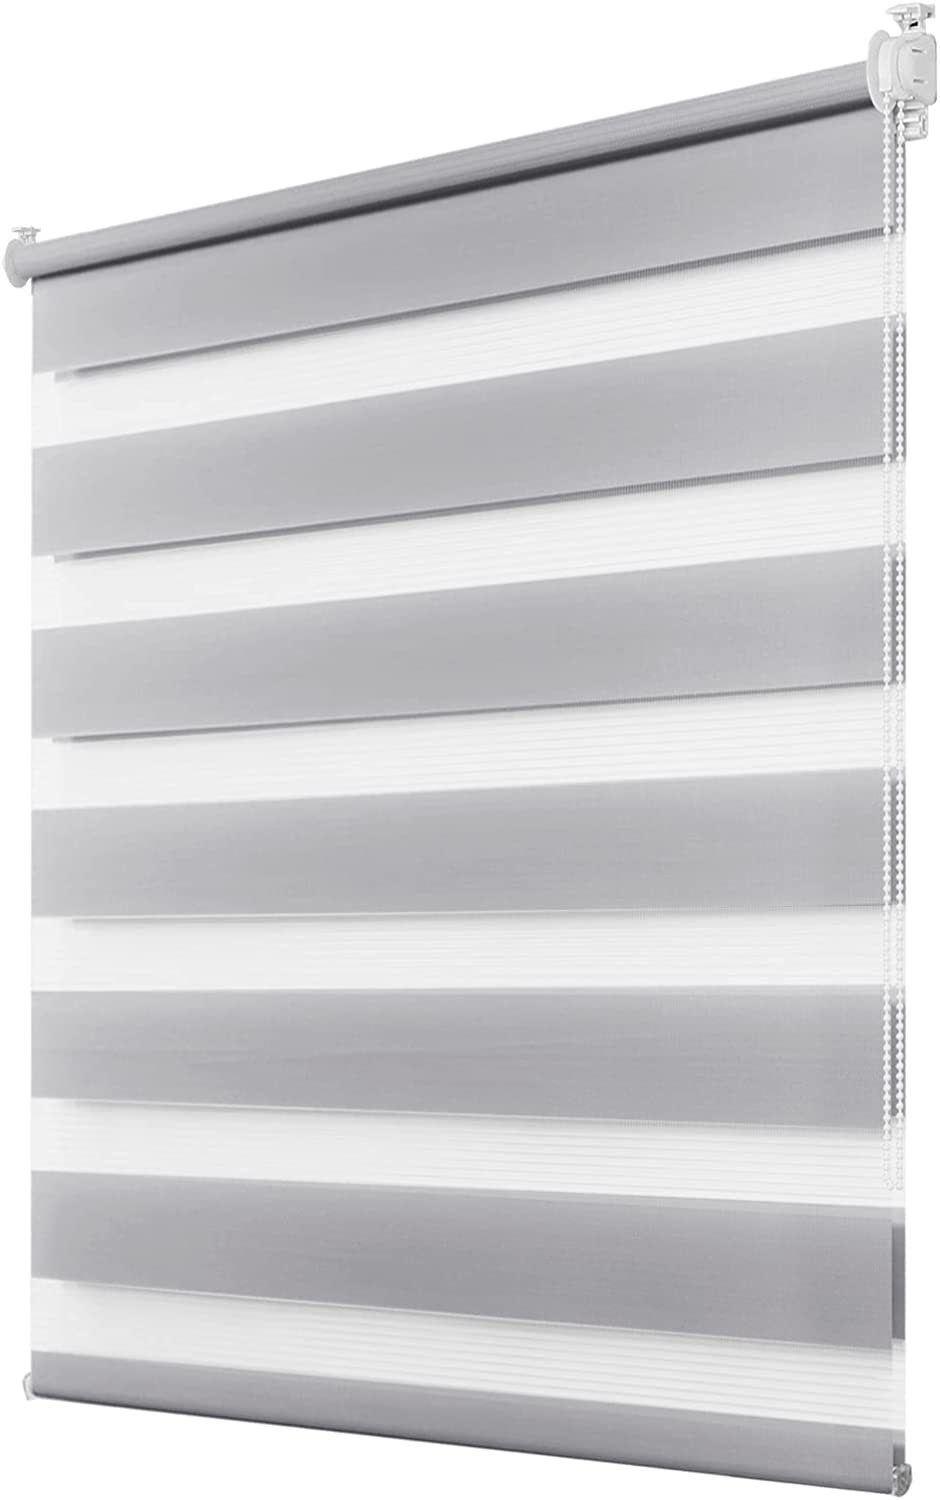 Doppelrollo Fensterrollos Ohne Bohren, Vkele, 130cm/160cm, klemmfix,klemmträger, Sonnenschutz, Lichtdurchlässig und Verdunkelnd. Grau